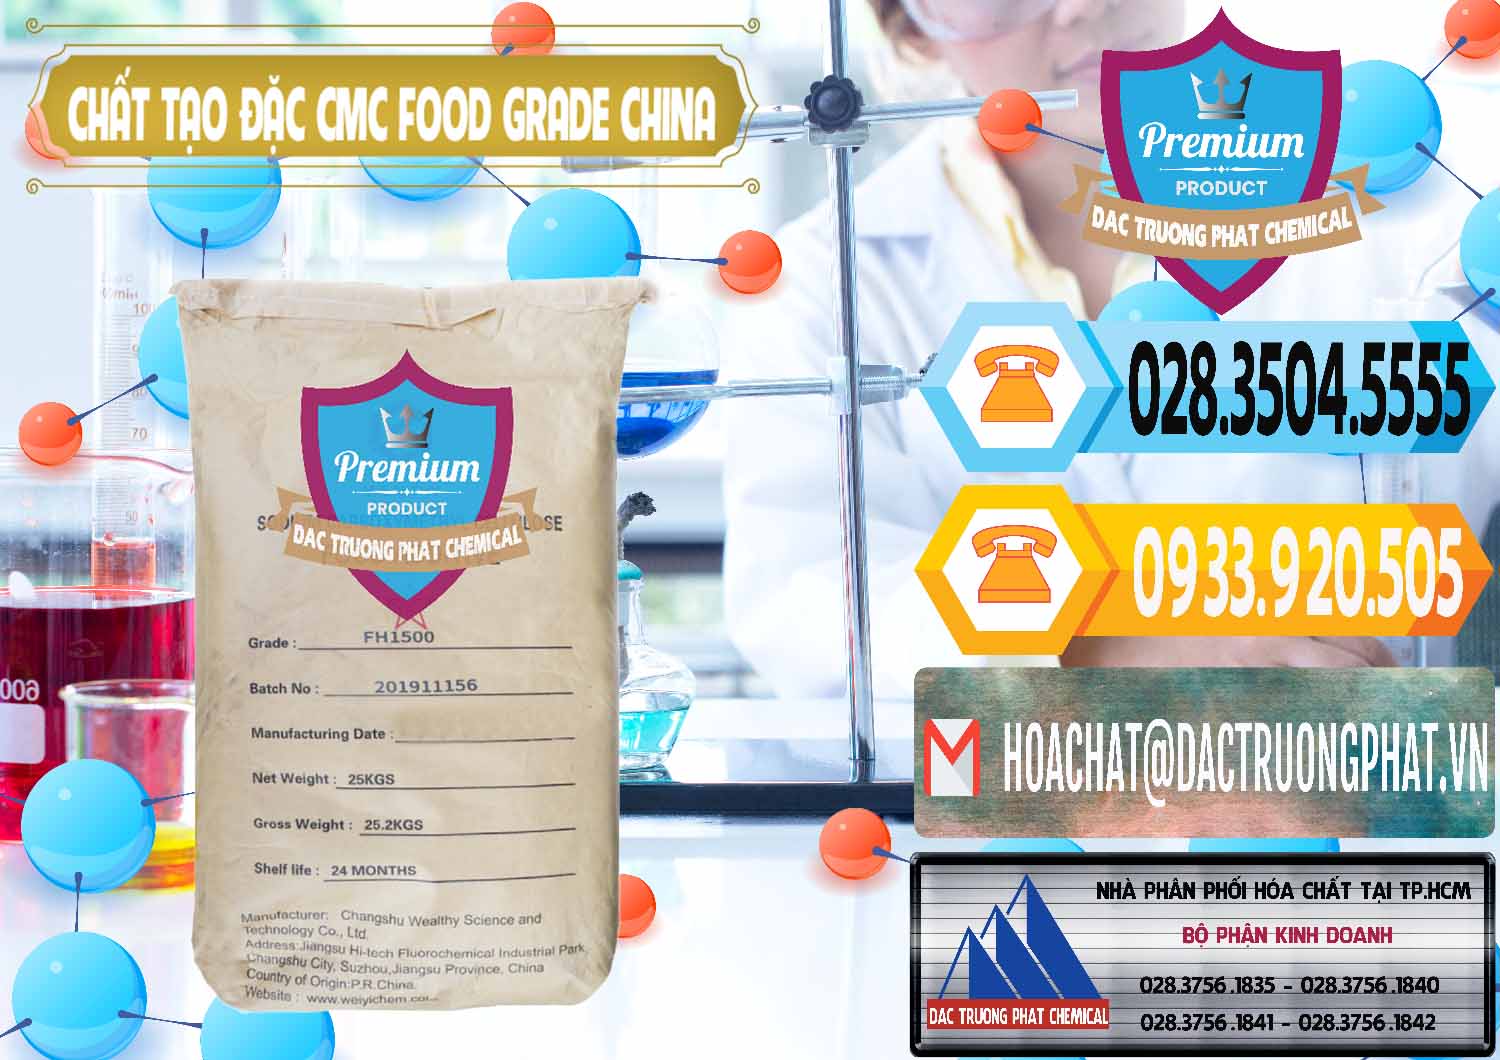 Cty chuyên kinh doanh _ bán Chất Tạo Đặc CMC Wealthy Food Grade Trung Quốc China - 0426 - Đơn vị phân phối và bán hóa chất tại TP.HCM - hoachattayrua.net